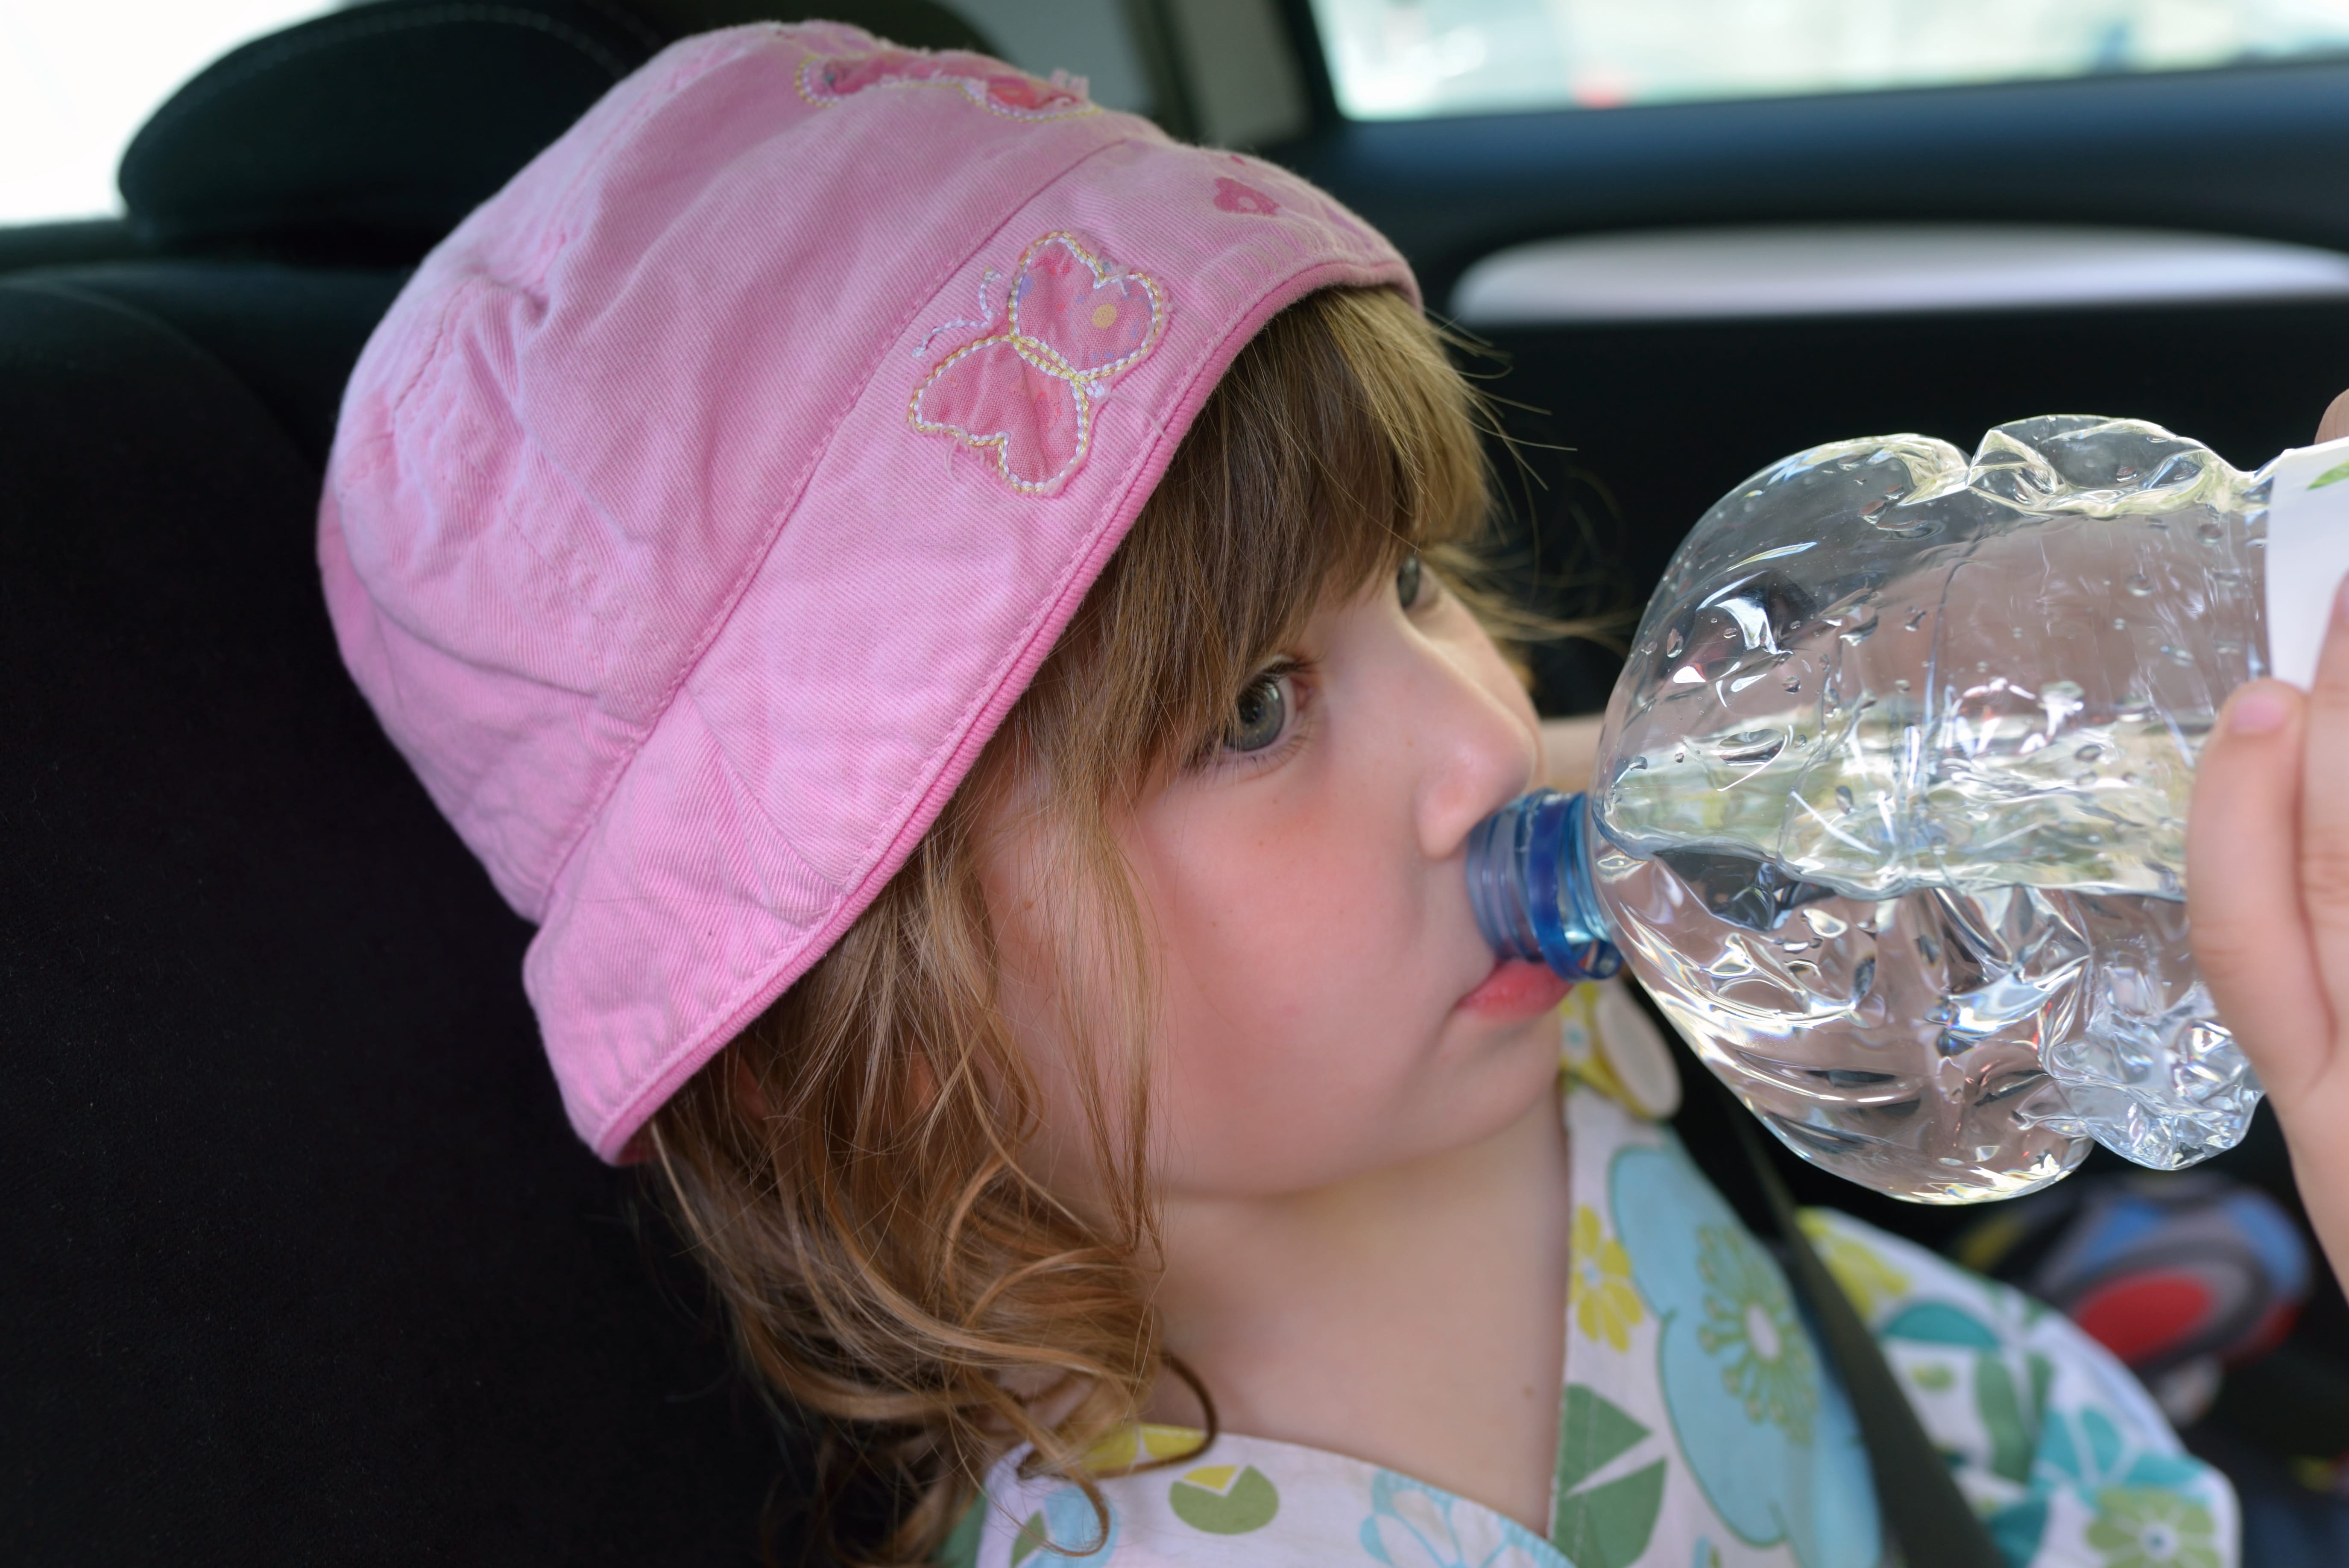 En cas de fortes chaleurs, pour éviter la déshydratation buvez régulièrement de l'eau&nbsp;©&nbsp;Image'in, Adobe Stock